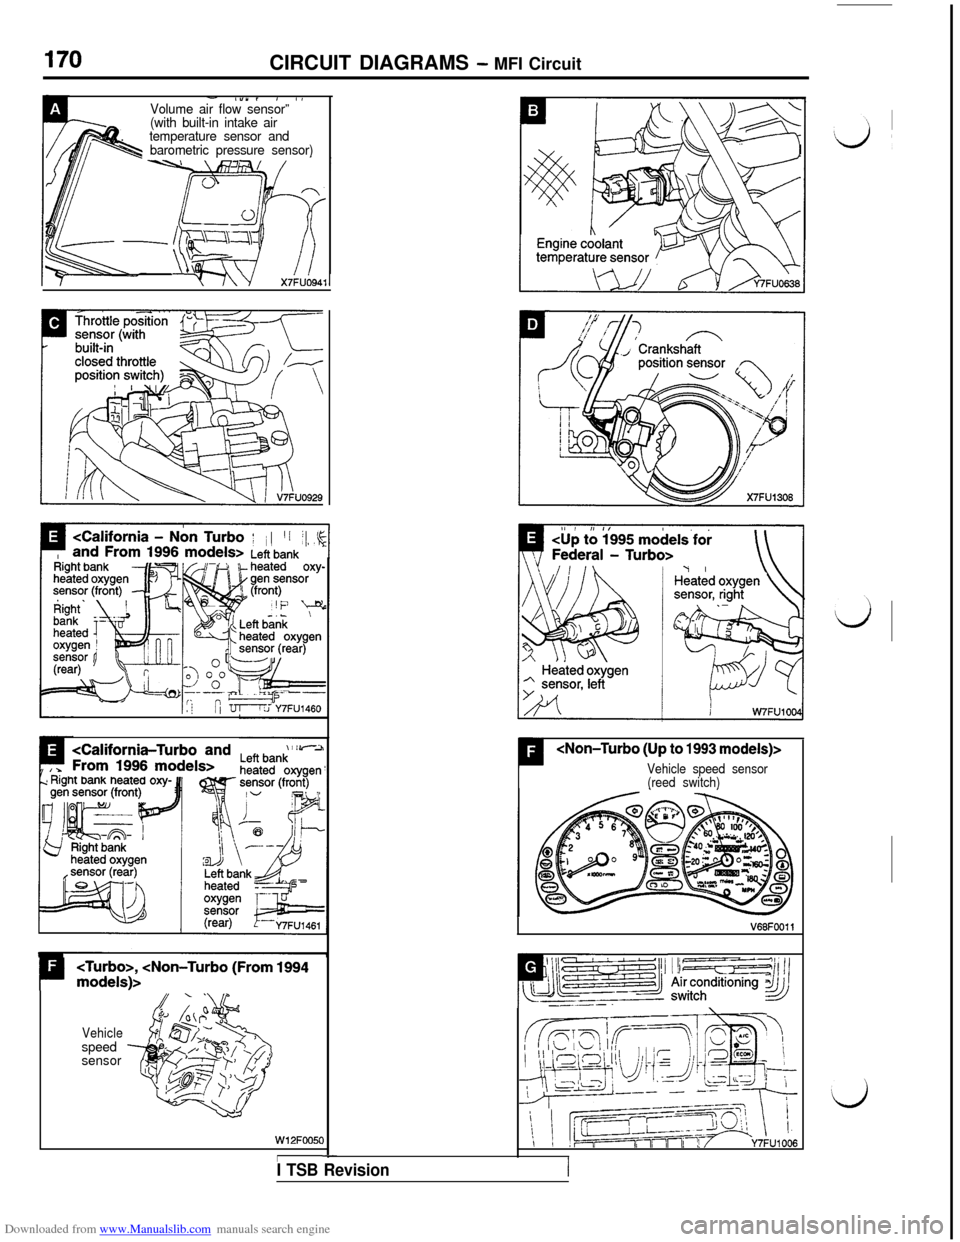 MITSUBISHI 3000GT 1993 2.G Workshop Manual Downloaded from www.Manualslib.com manuals search engine CIRCUIT DIAGRAMS - MFI Circuit
- l”“, , IVolume air flow sensor”’.(with built-in intake air
temperature sensor and
barometric pressure 